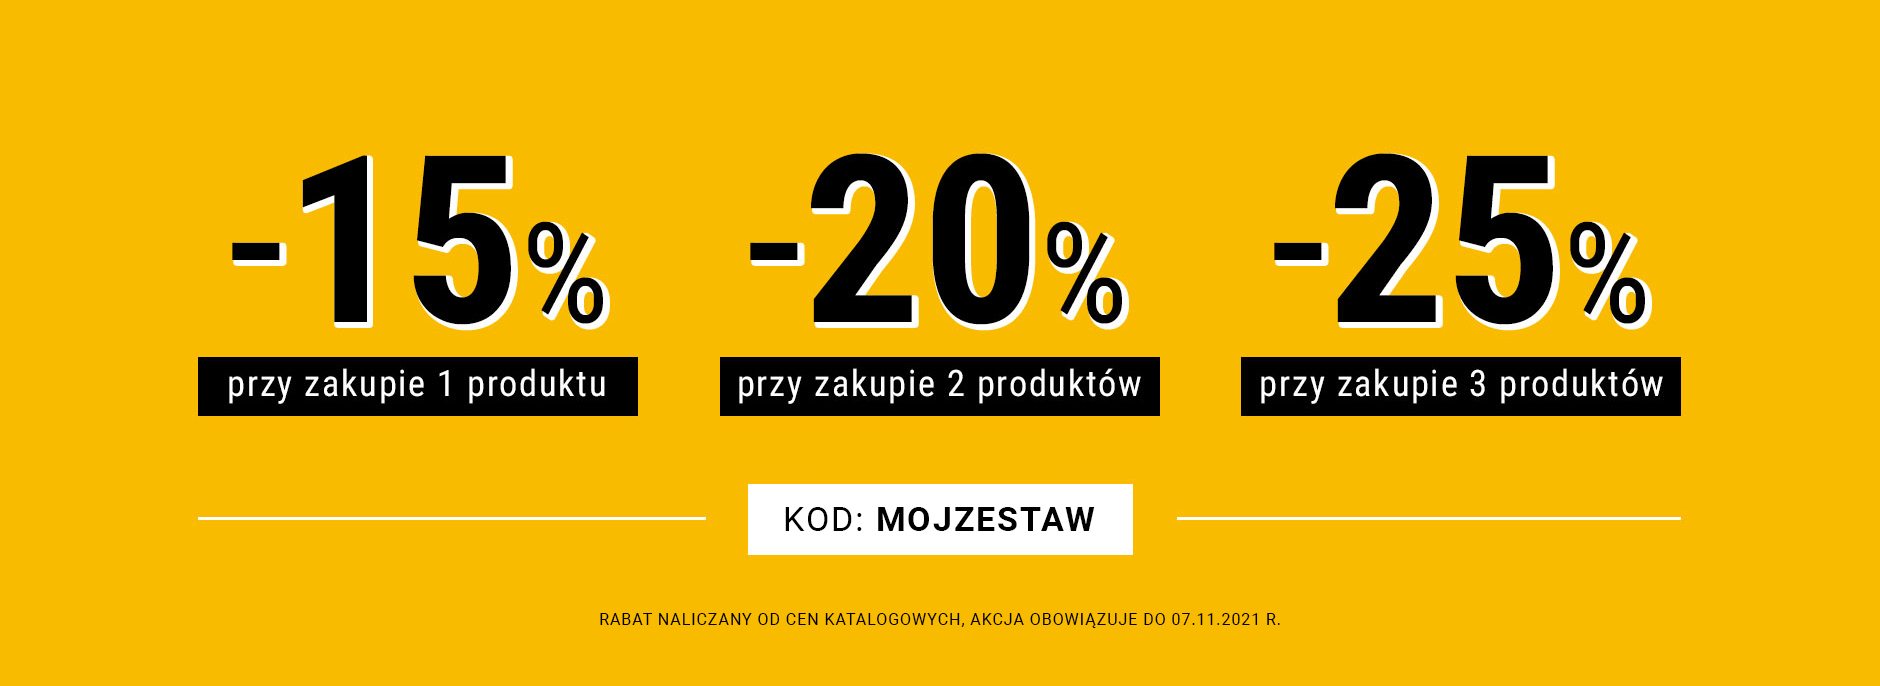 15% kupując 1 produkt, 20% kupując 2 produkty, 25% kupując 3 produkty z kodem: ZgarnijRabat